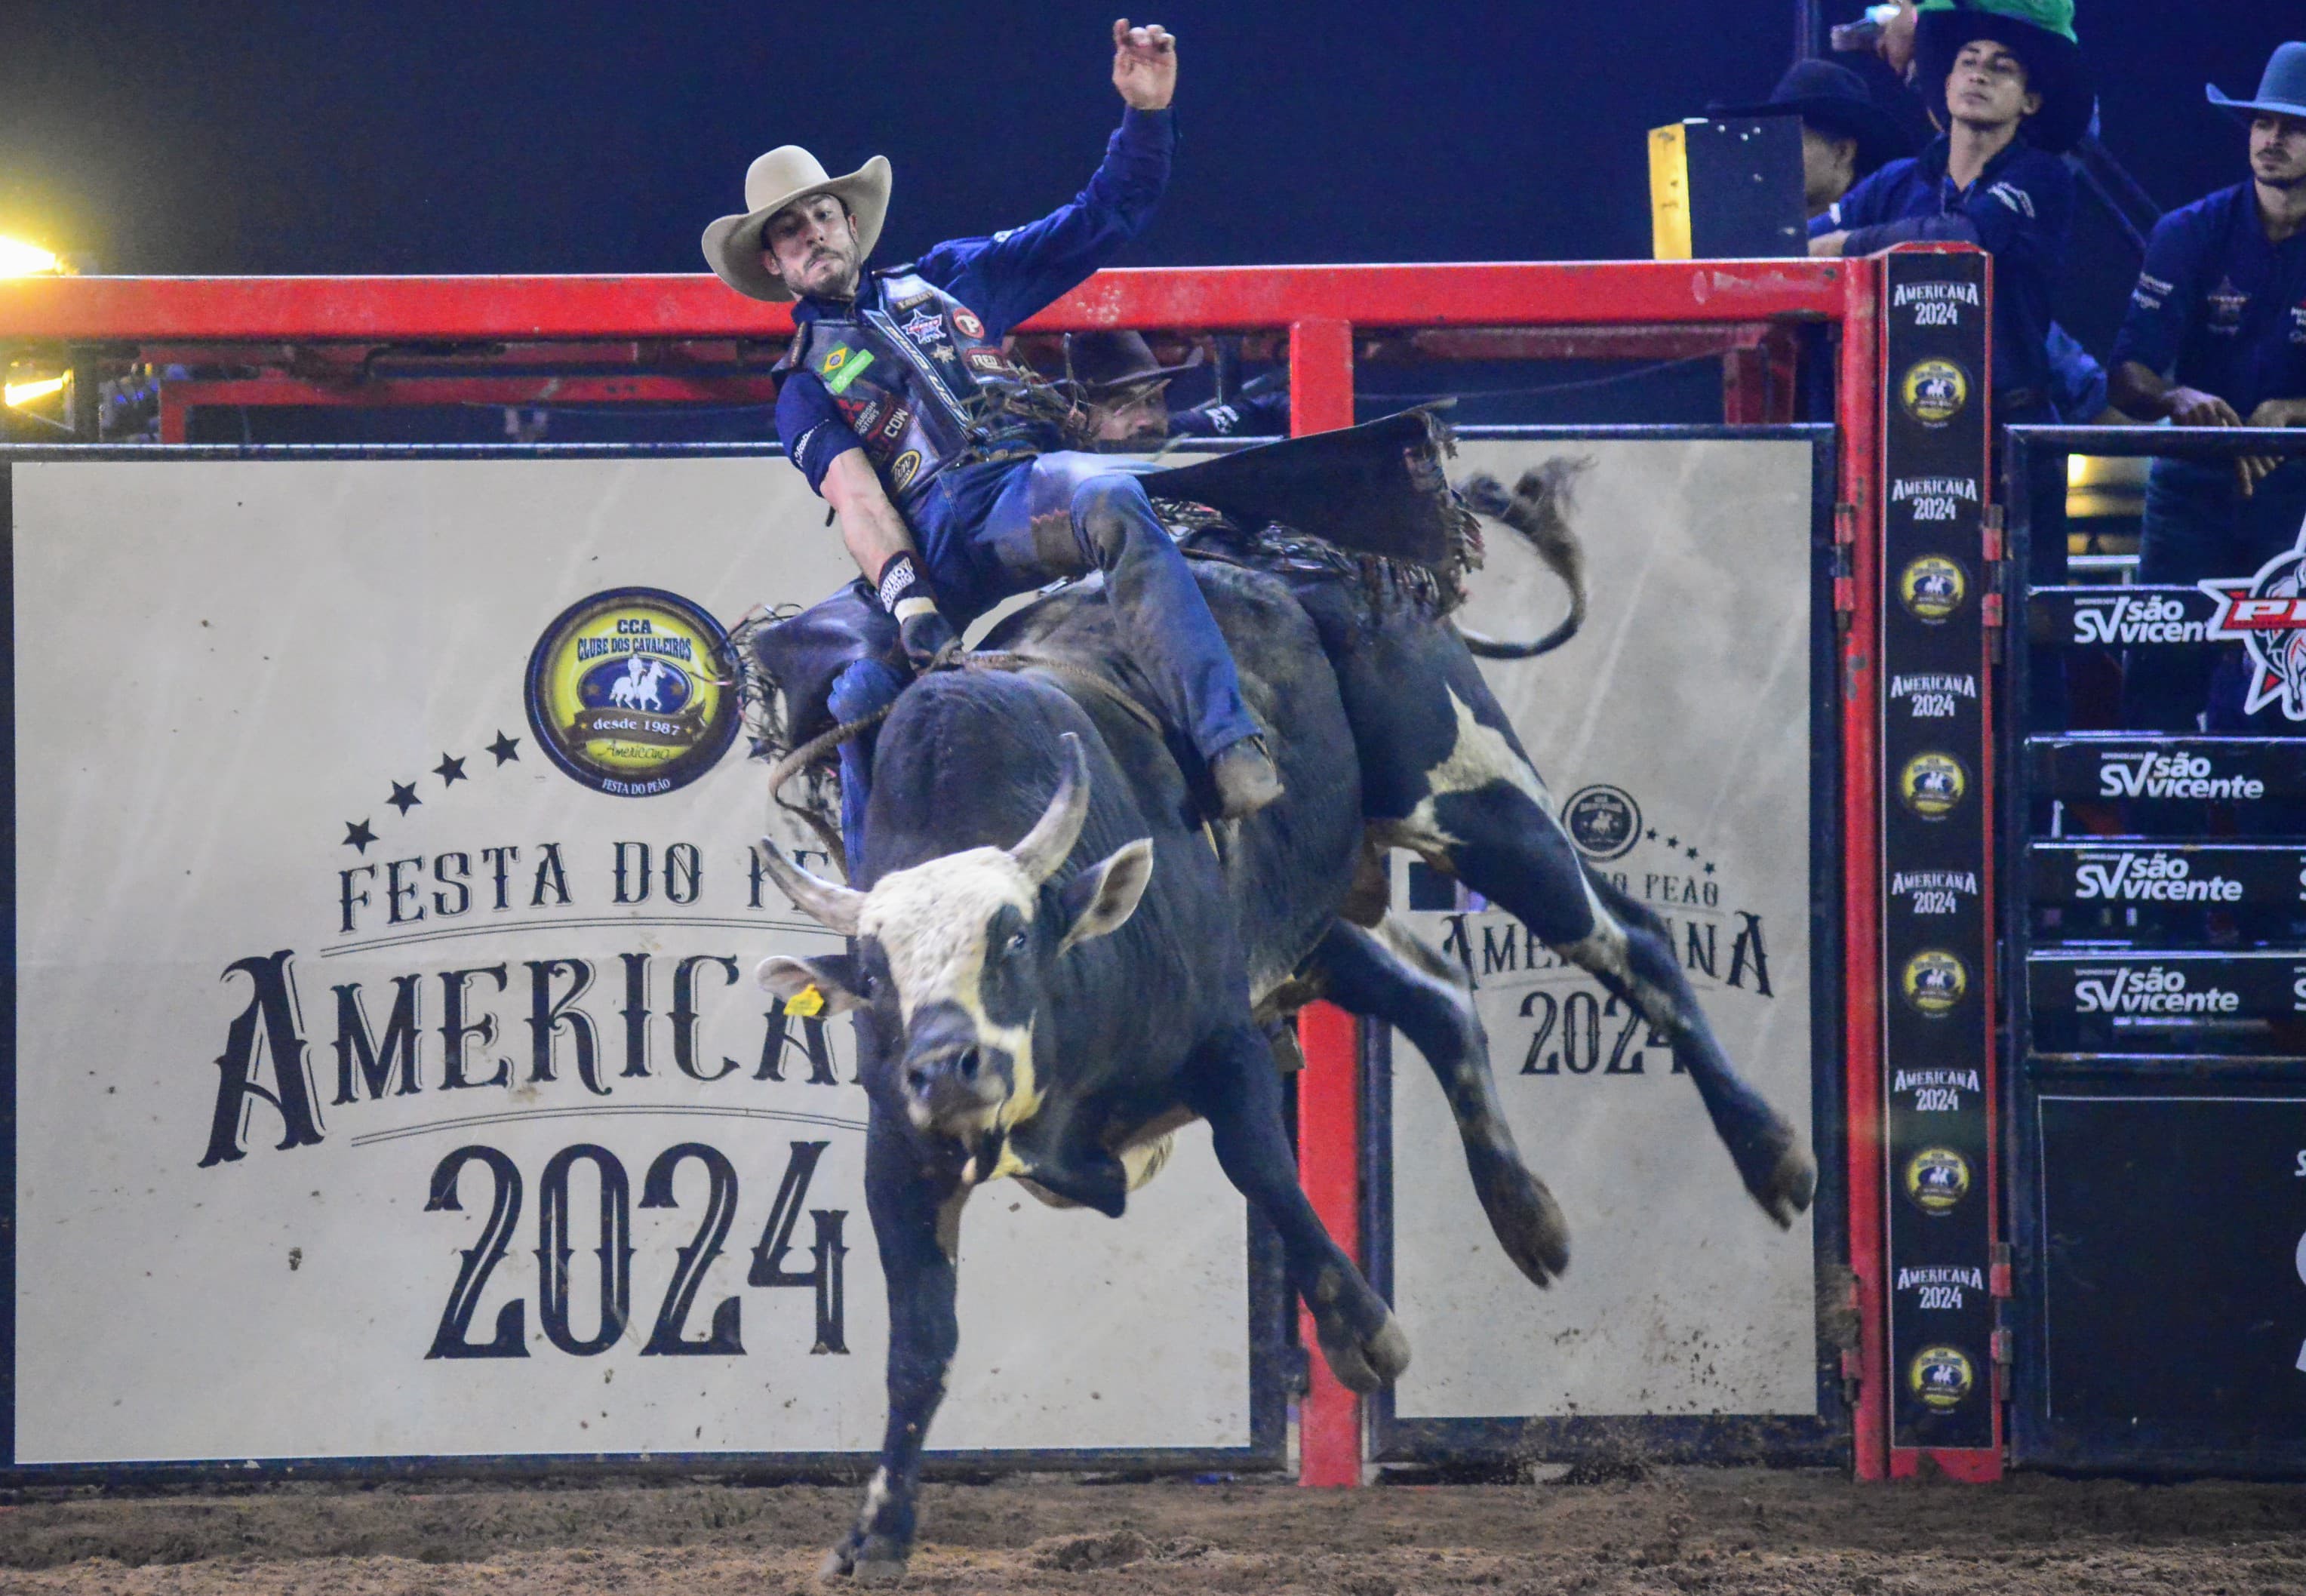 Winny dos Santos vence montaria em touros na segunda noite da Festa do Peão de Americana 